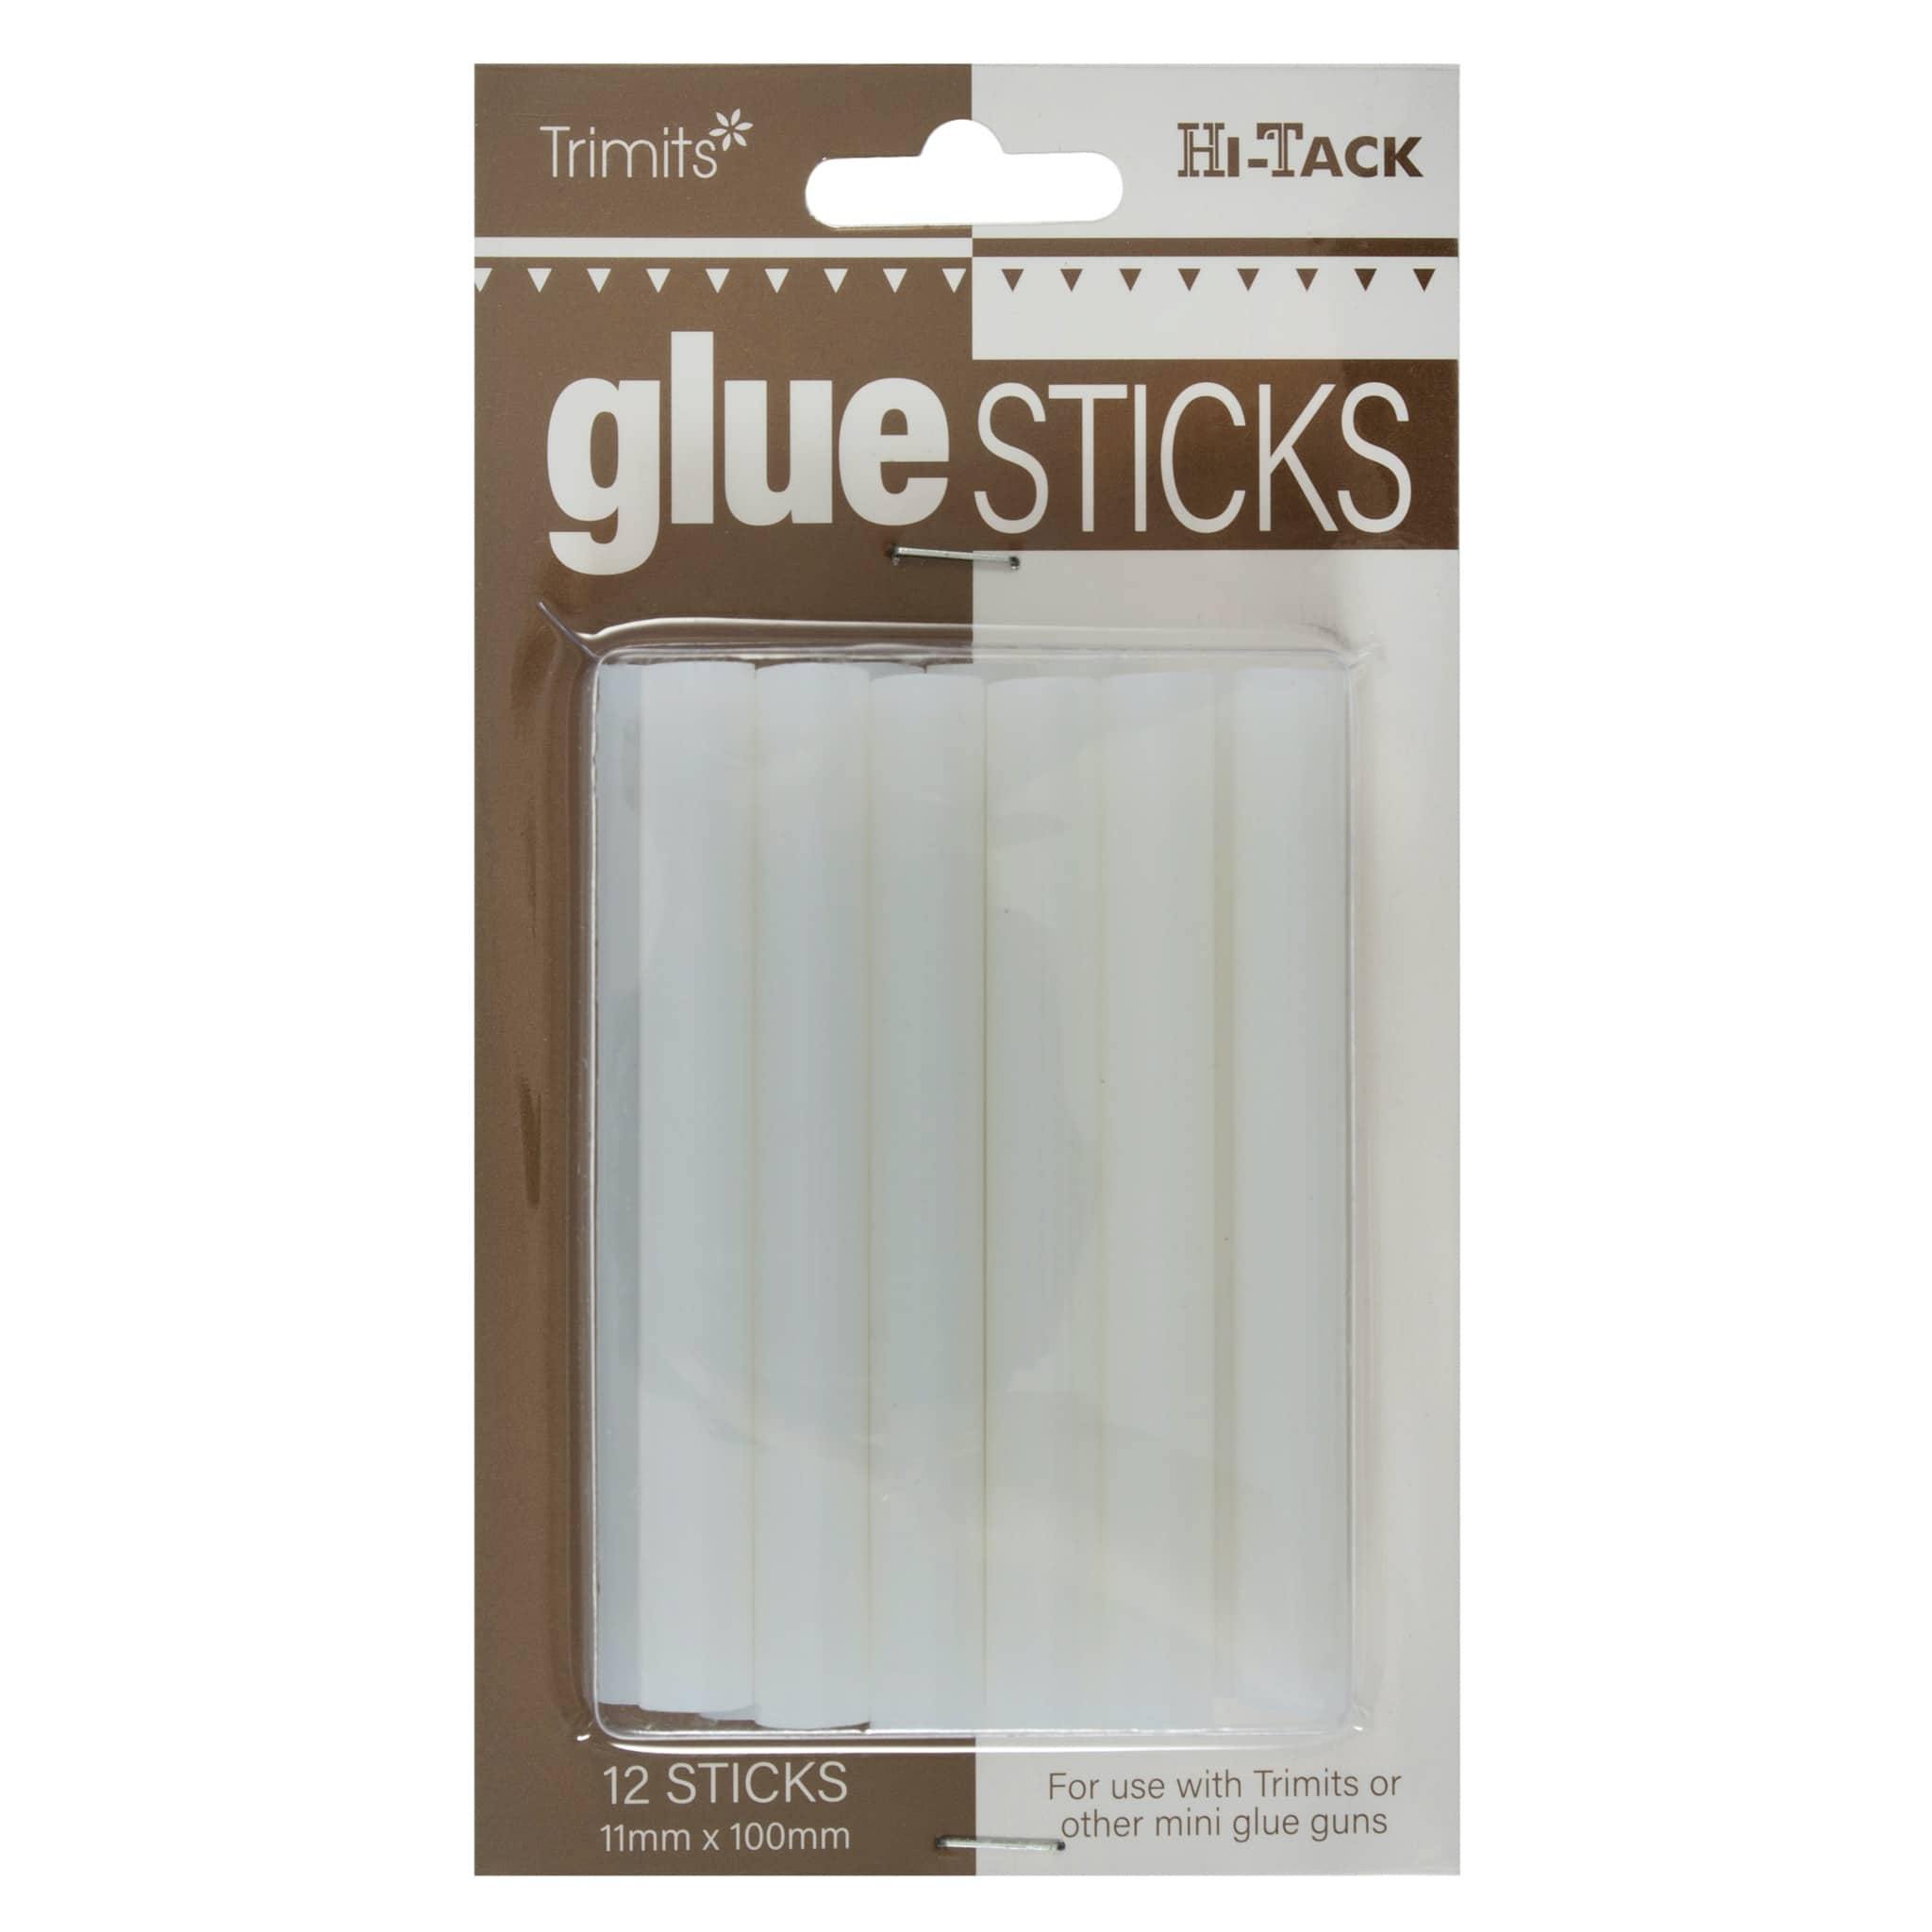 Hi-Tack Glue Sticks 11mm 12 Pieces